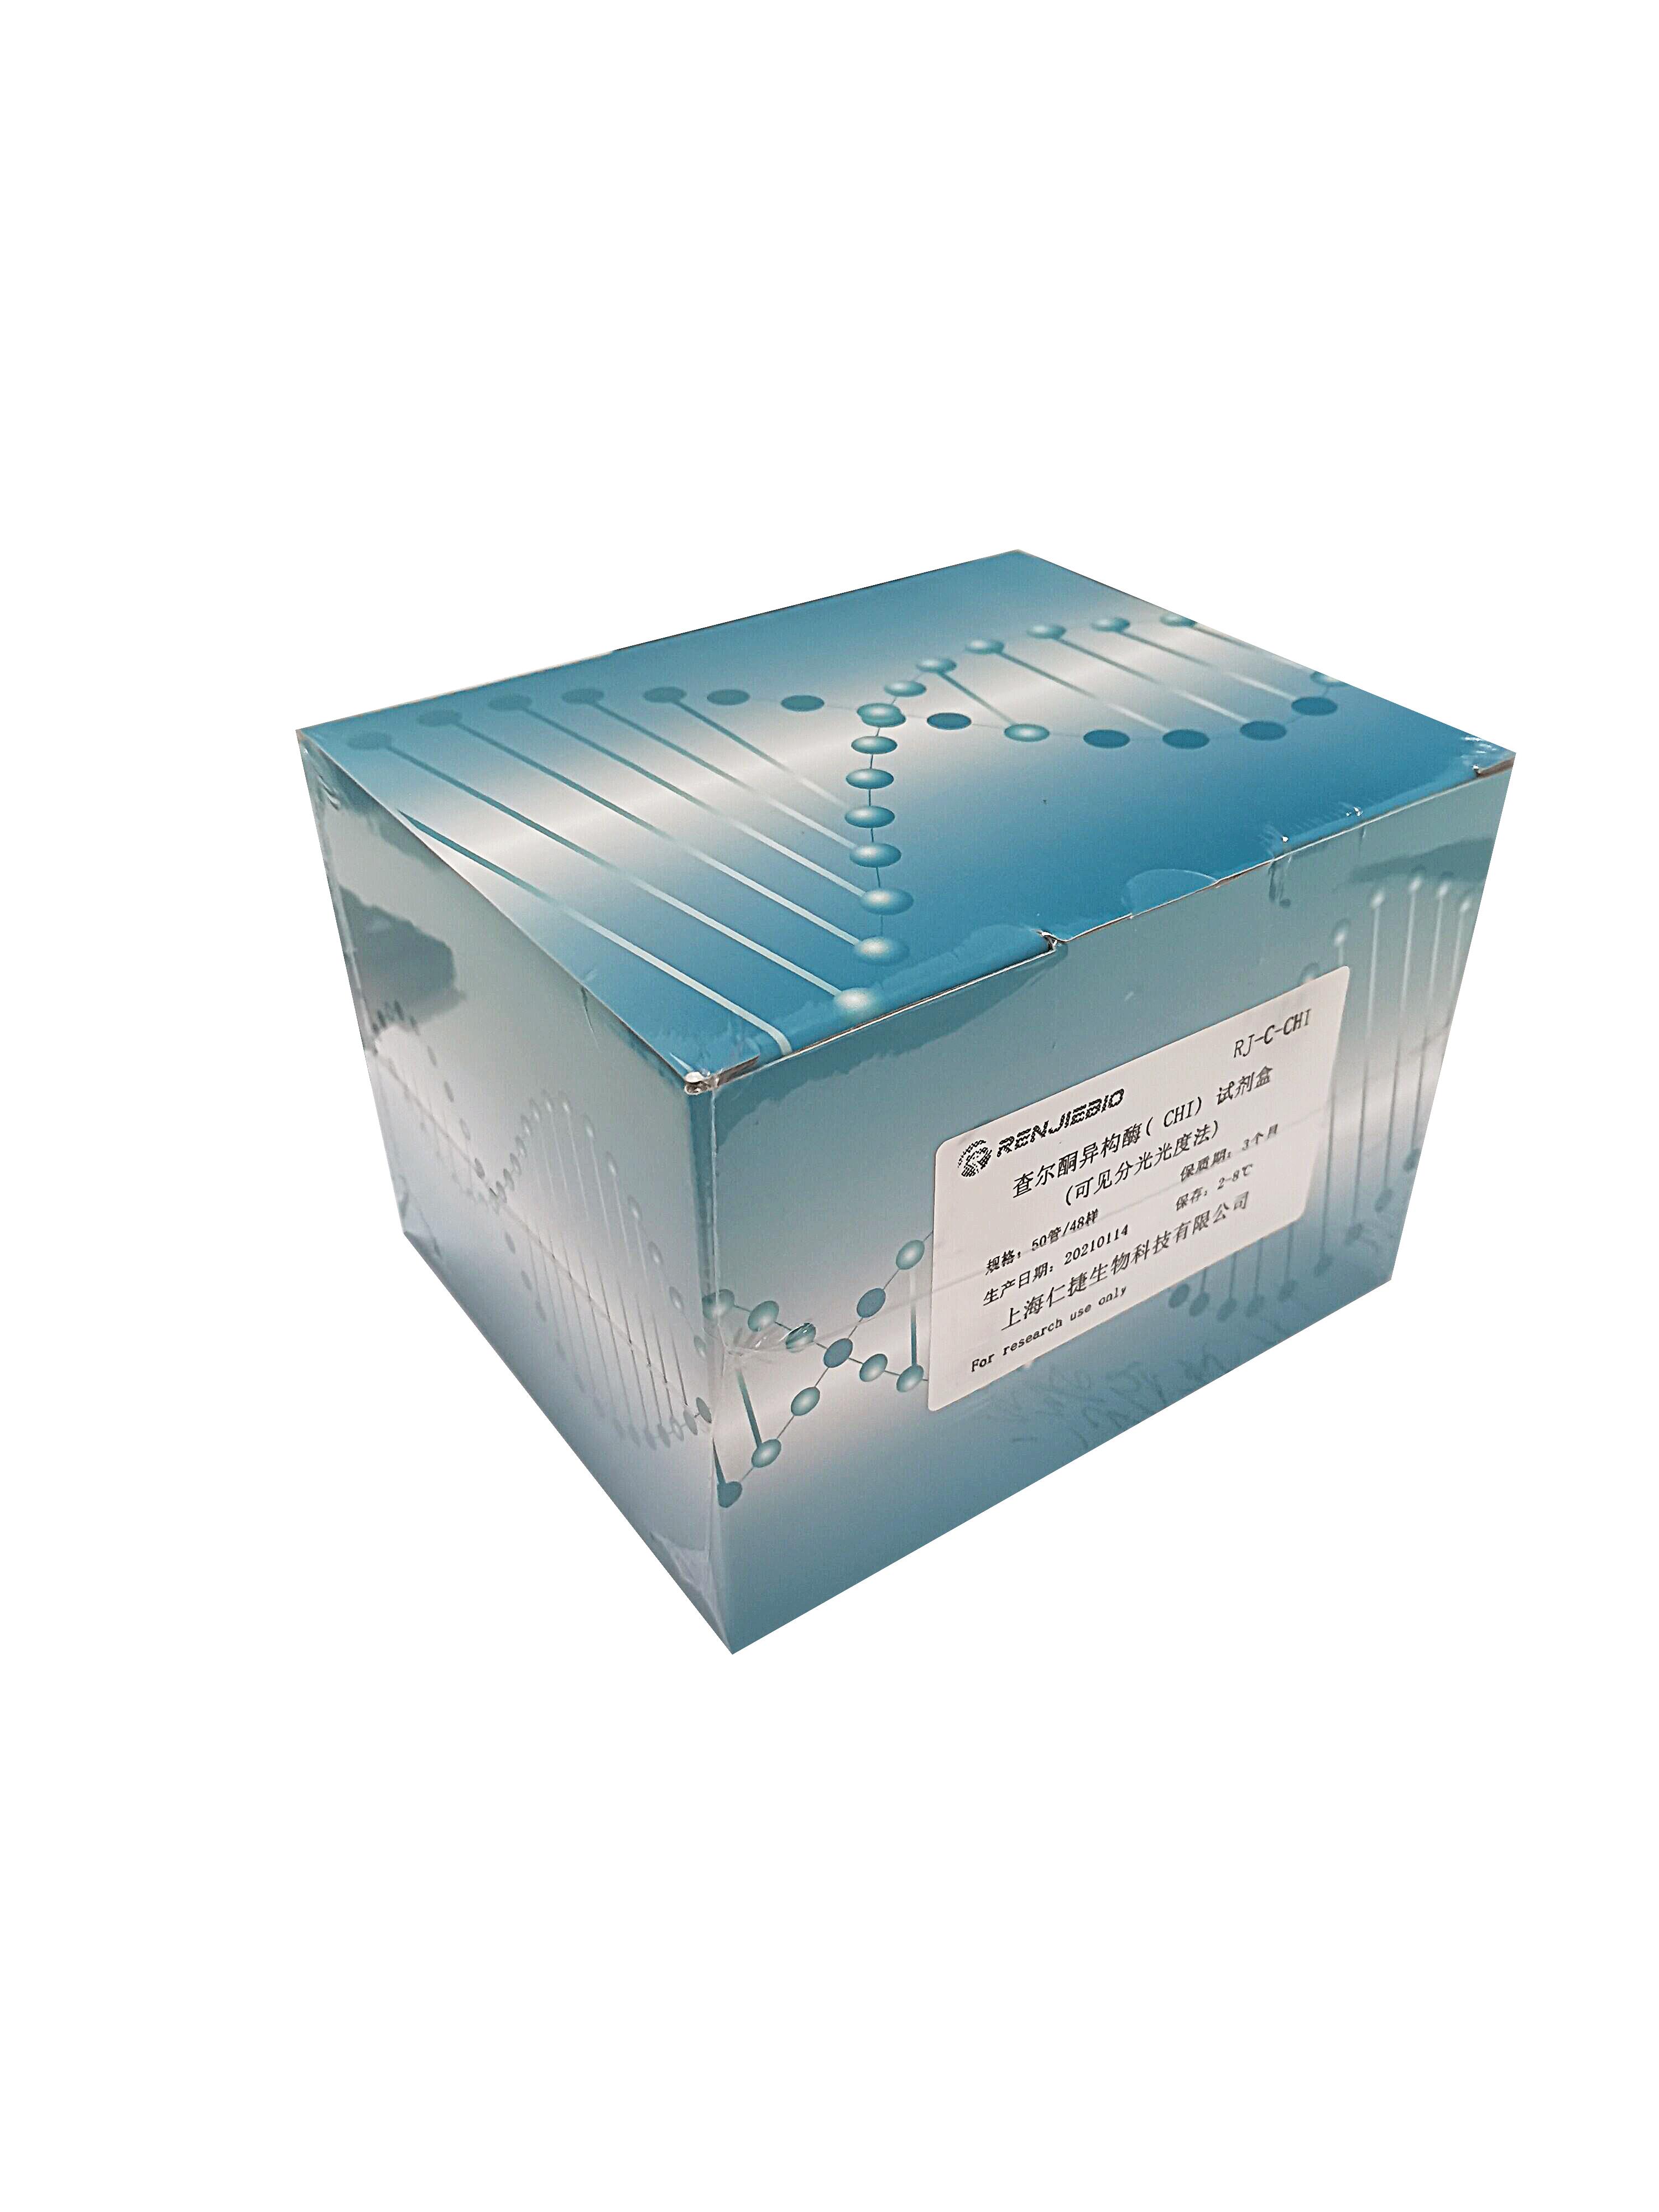 乳酸脱氢酶（LDH）活性检测试剂盒-可见分光光度法